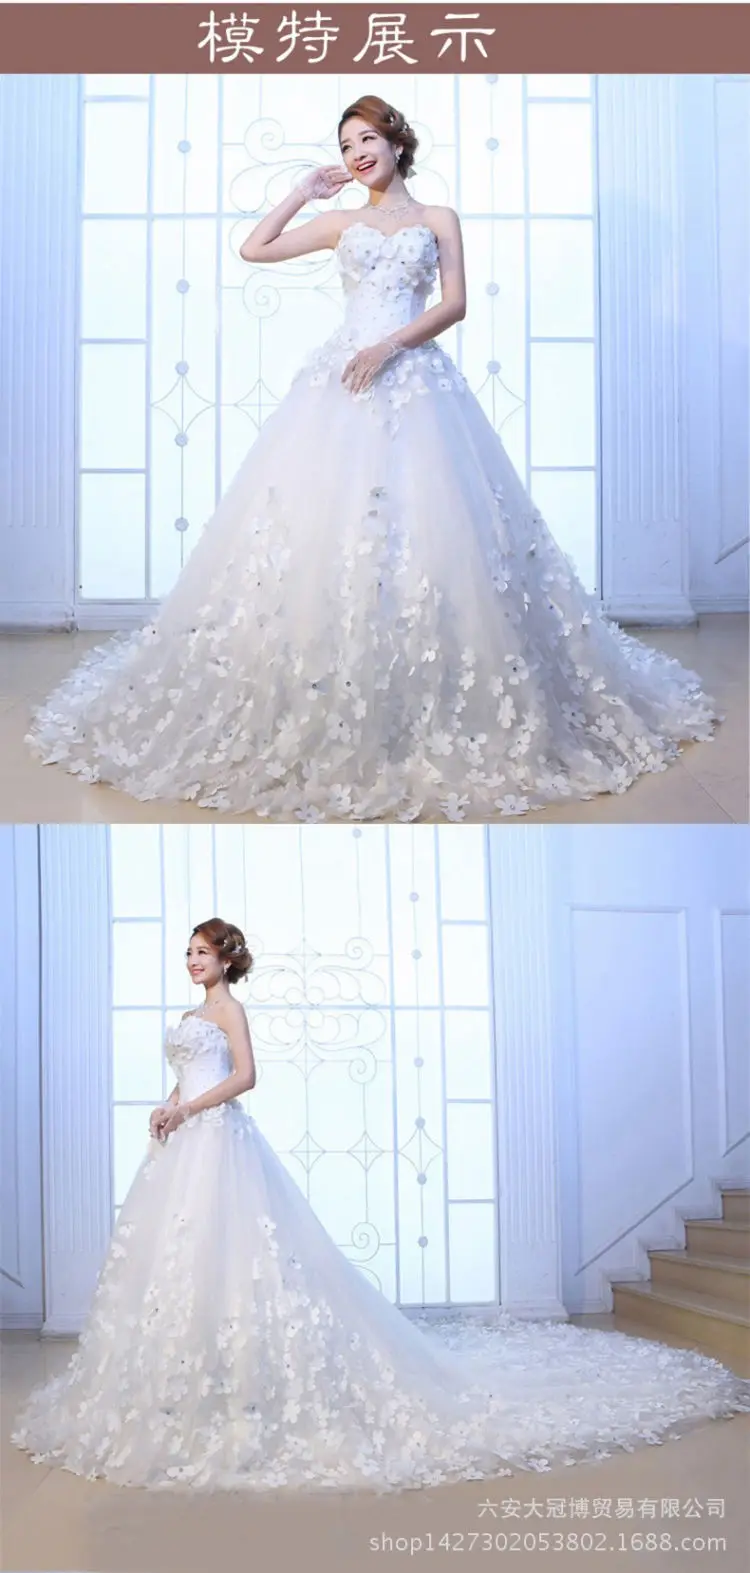 Luxury Gaun Pernikahan 3d Lace Applique Plus Size White Red Boob Tube ...